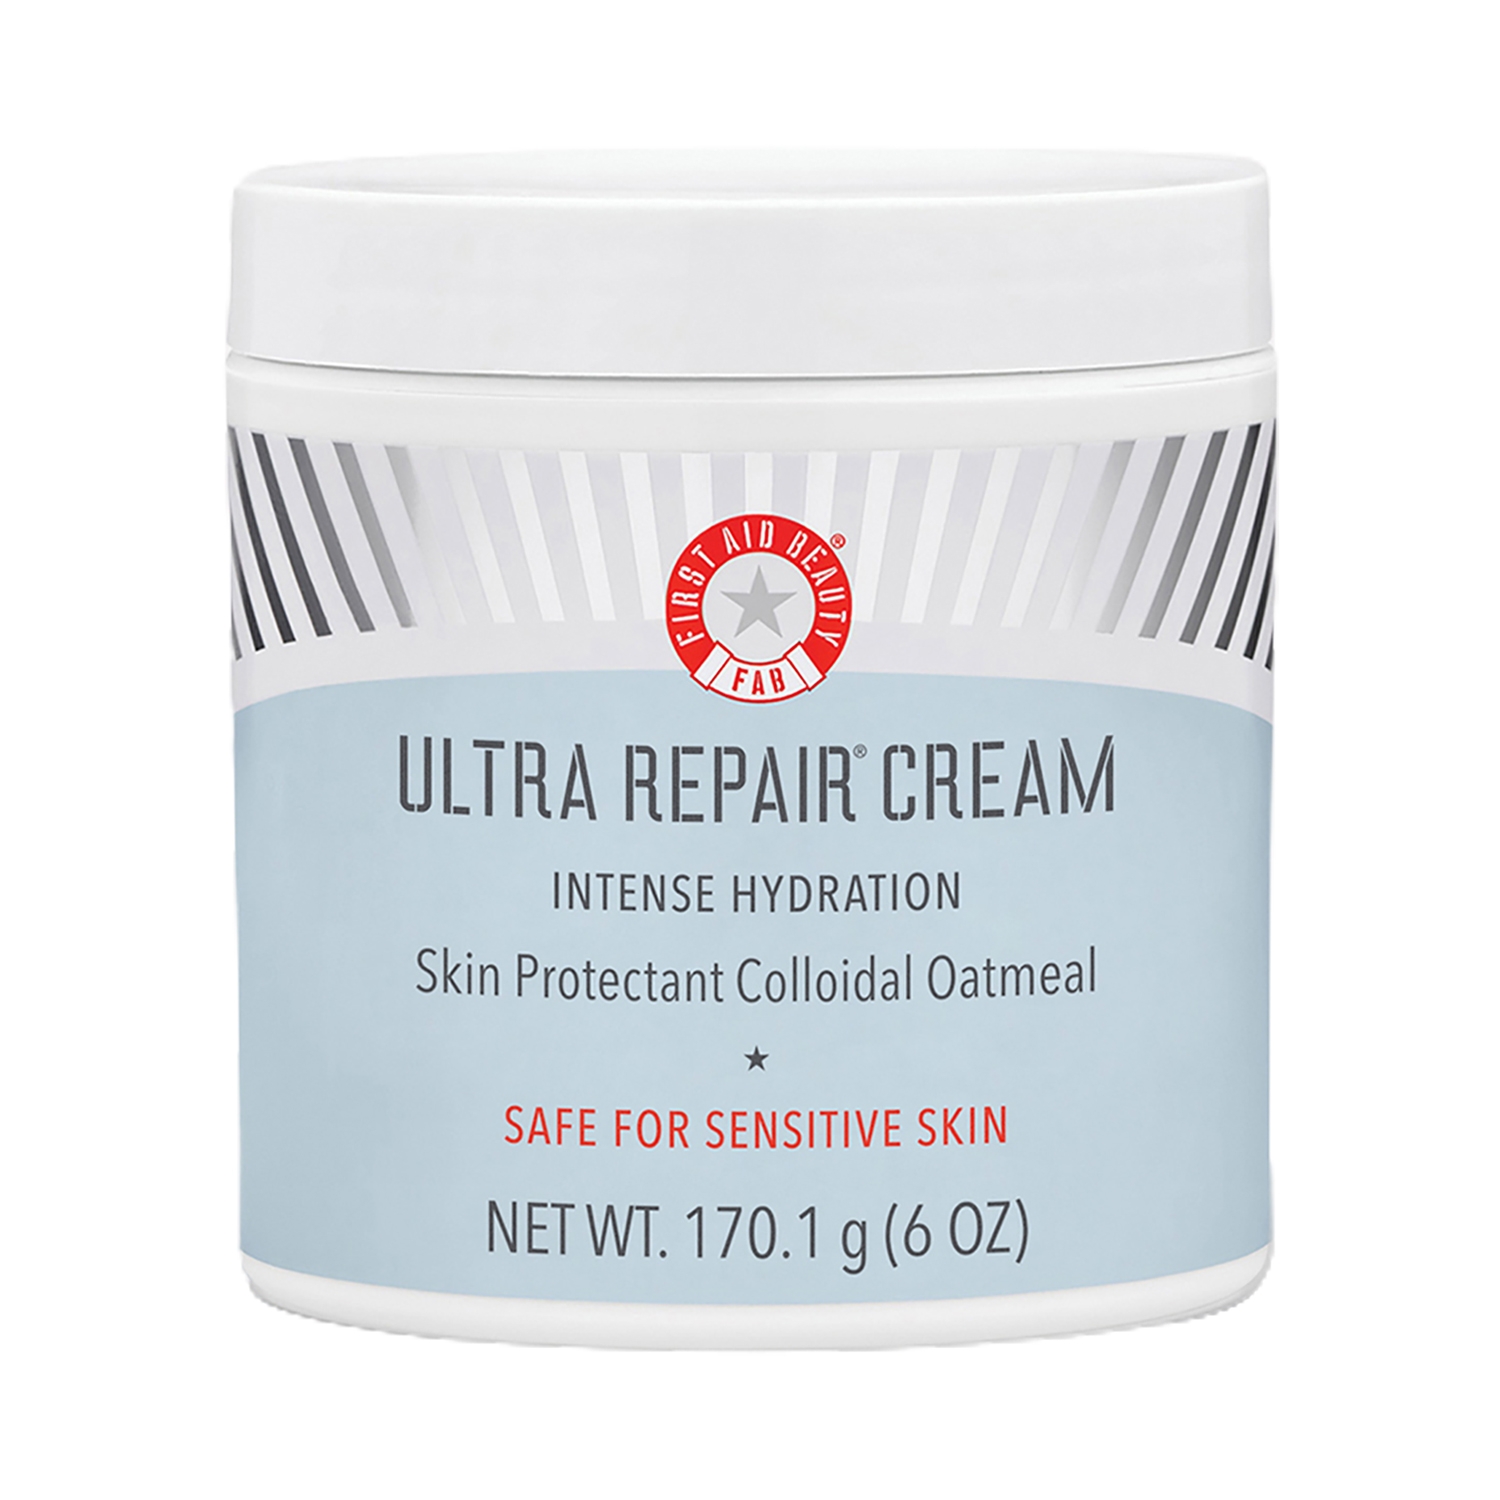 First Aid Beauty Ultra Repair Cream (170.1g)